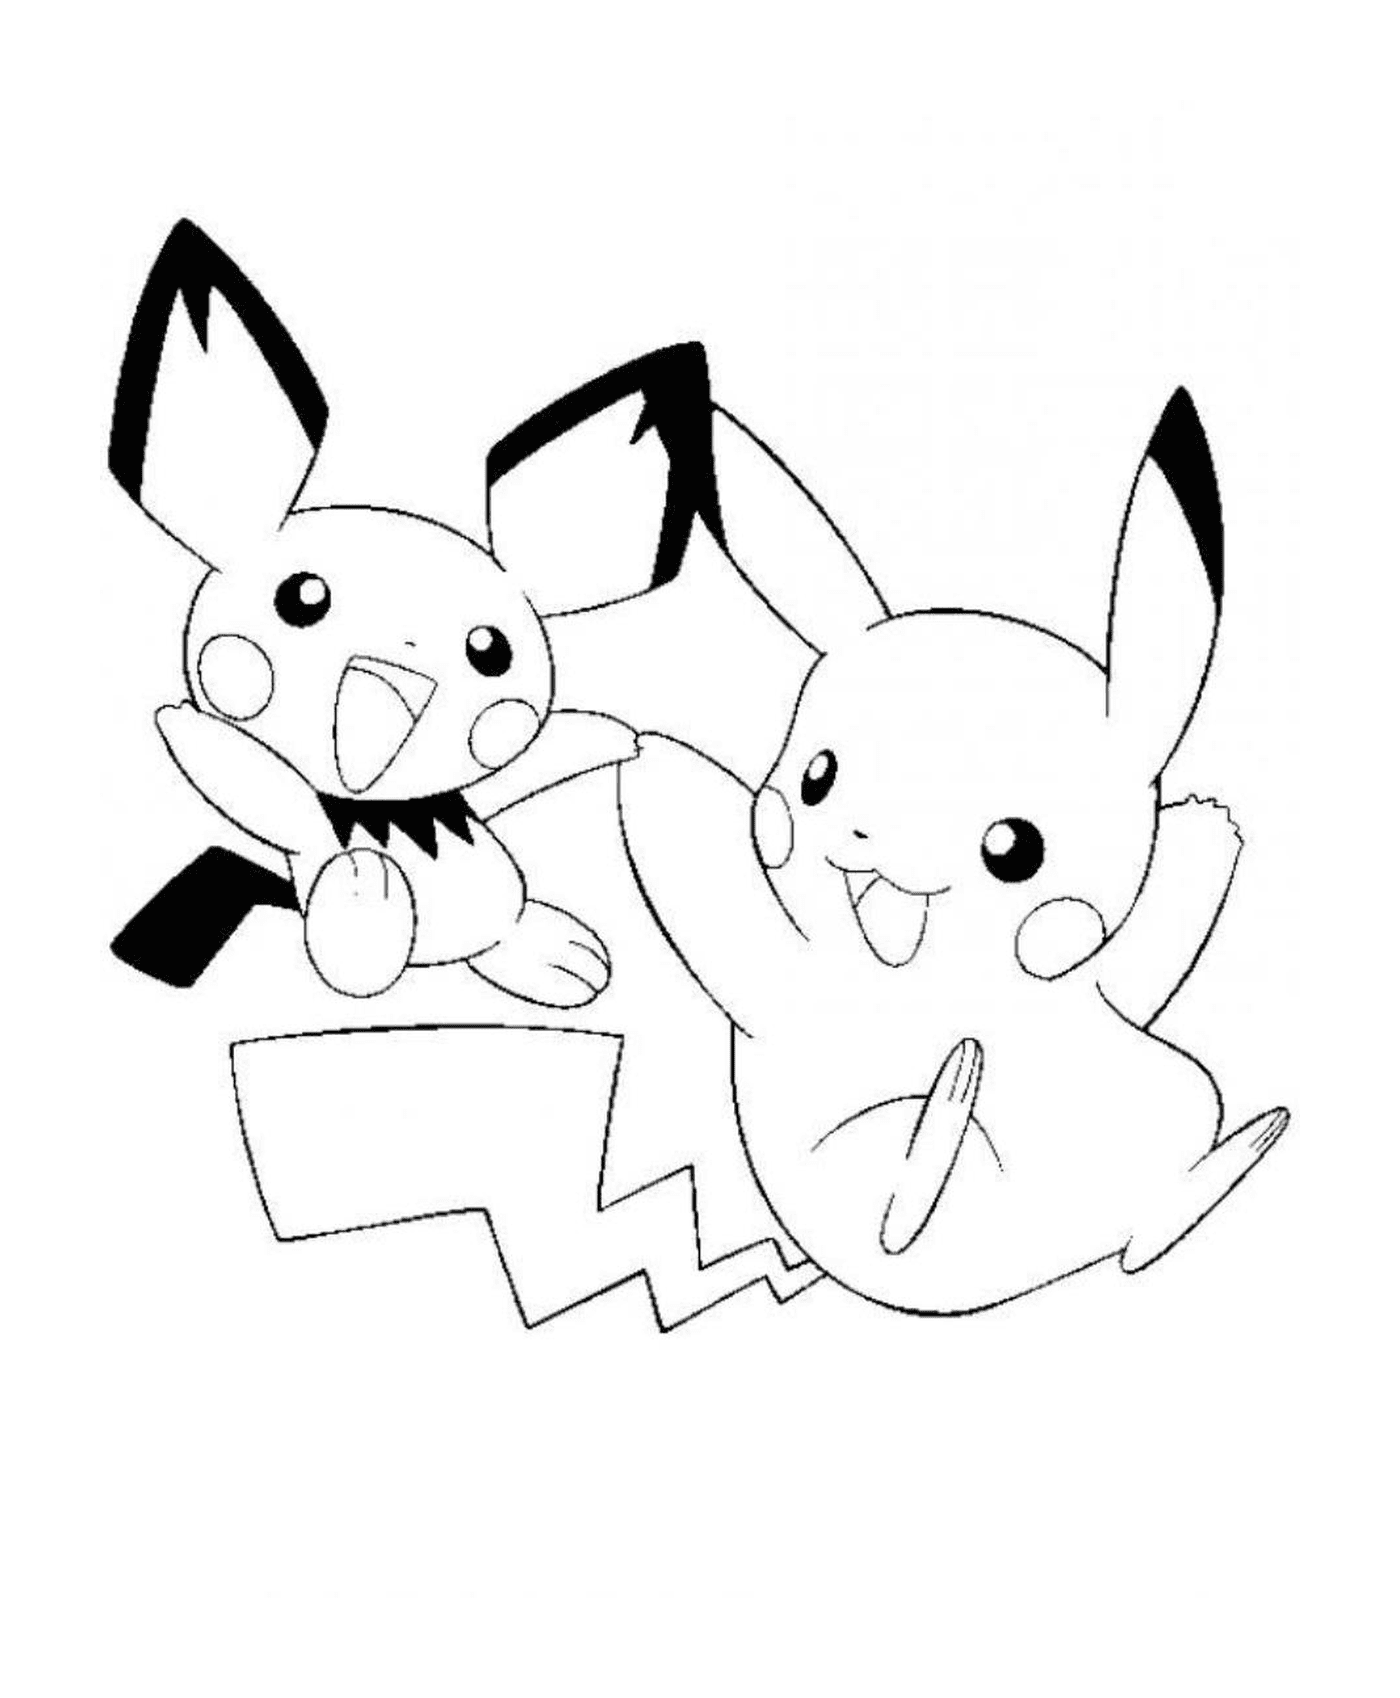   Deux Pikachus se rencontrent 